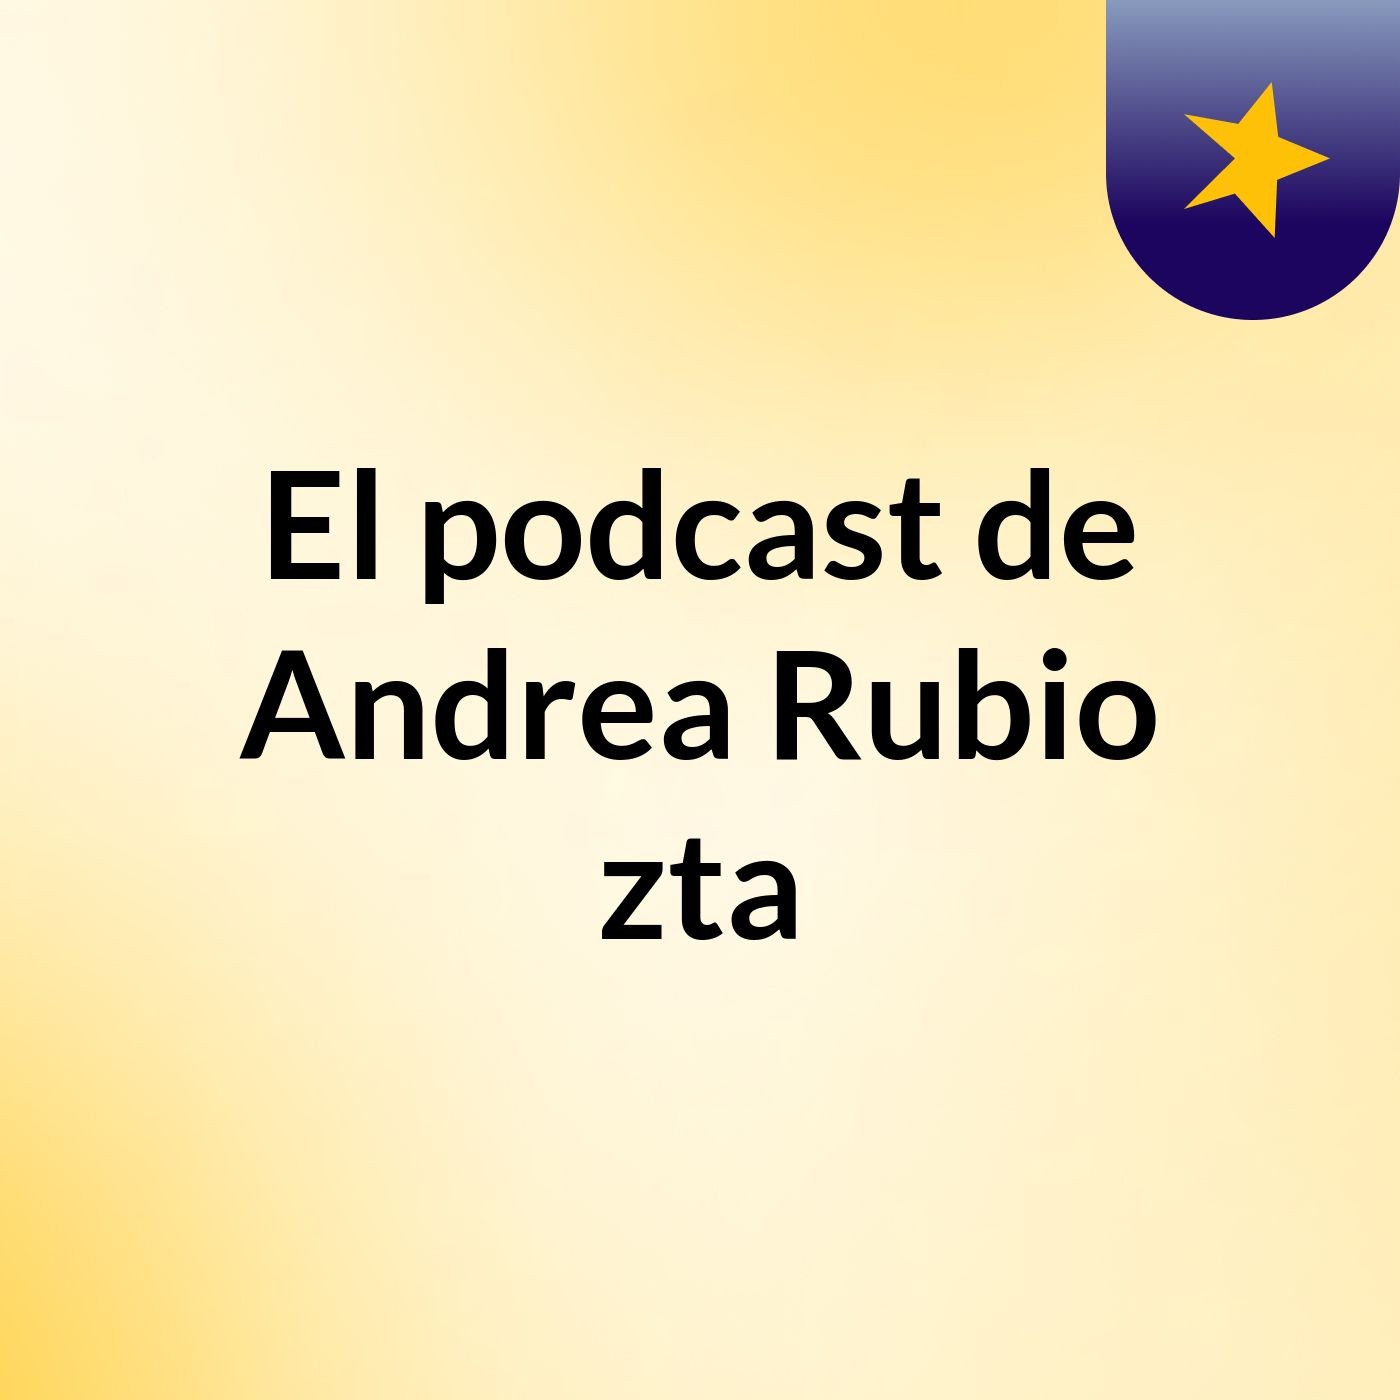 Episodio 2 - El podcast de Andrea Rubio zta